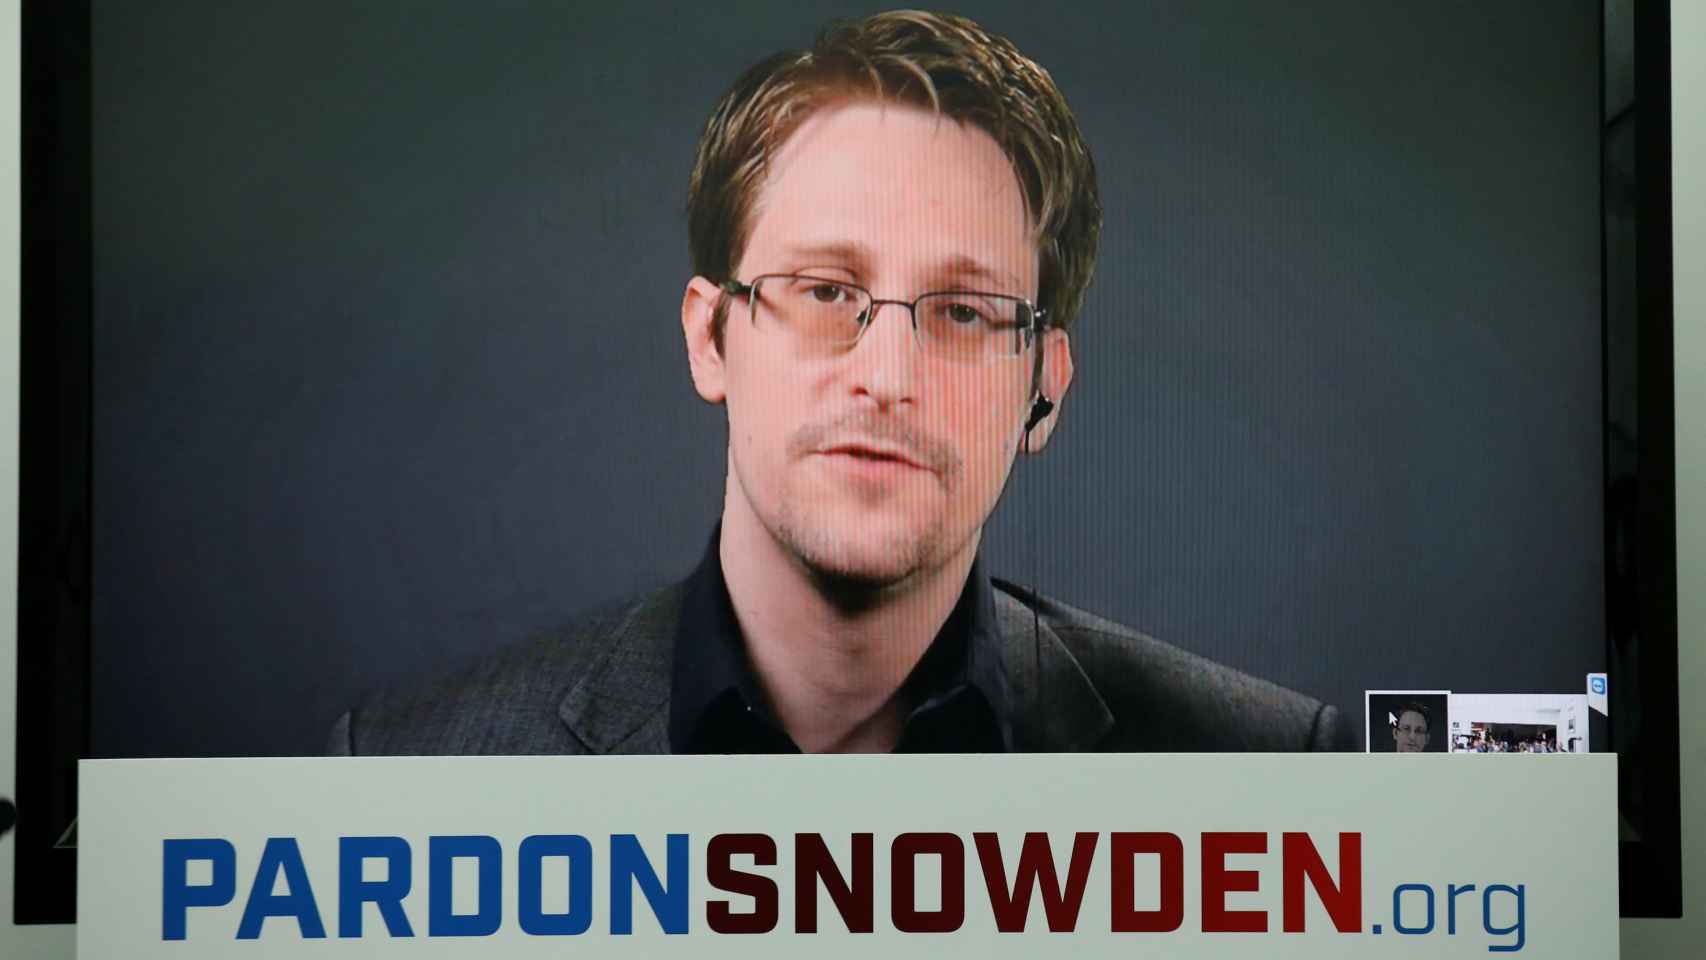 Edward Snowden a través de una pantalla durante el evento en Nueva York.